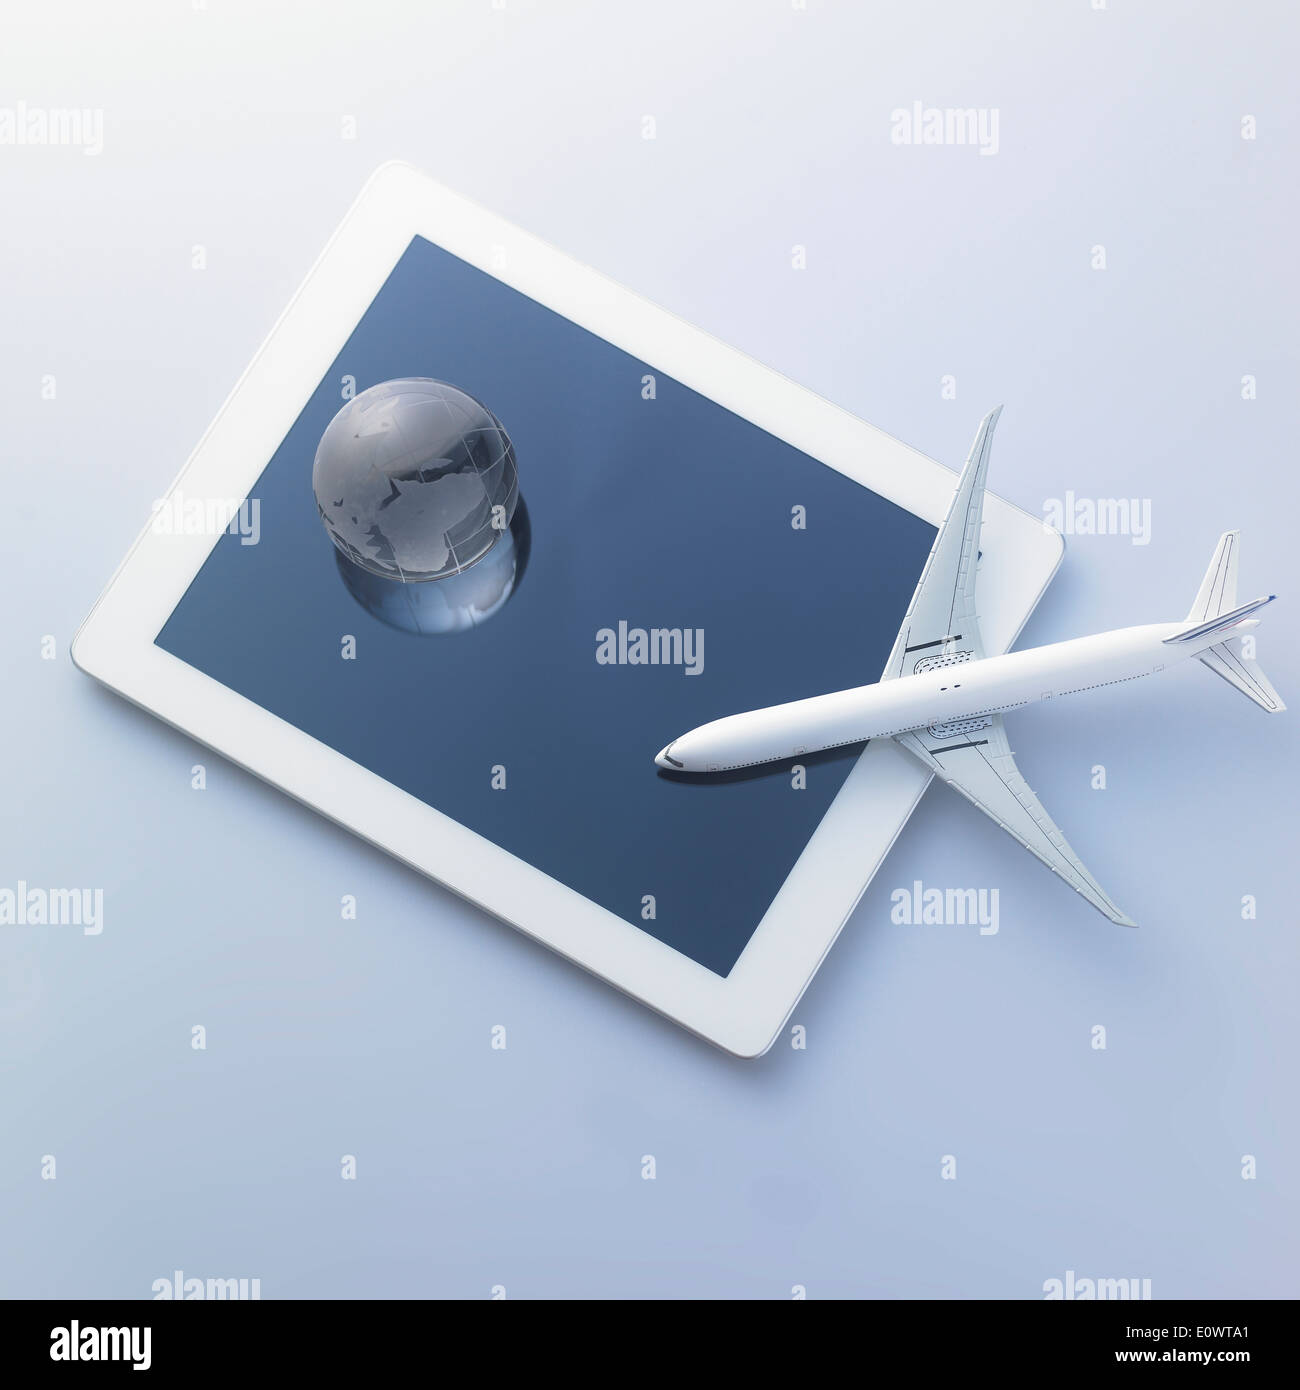 Un avion et une bille de verre sur une tablette Banque D'Images